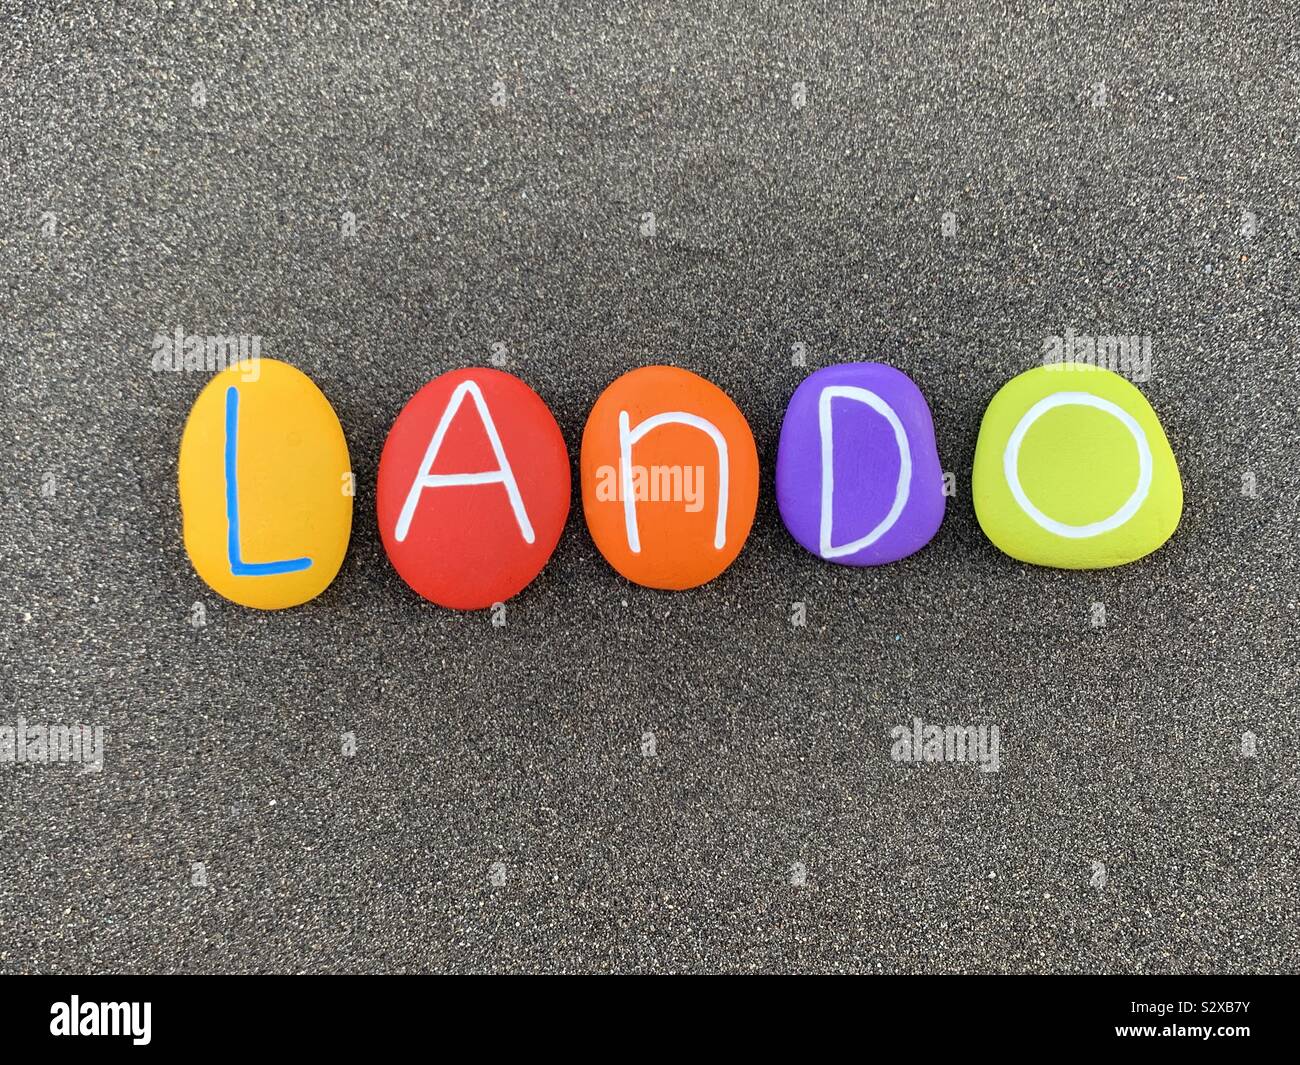 Lando, männliche italienische Vornamen besteht aus farbigen Steinen über schwarzen vulkanischen Sand Stockfoto